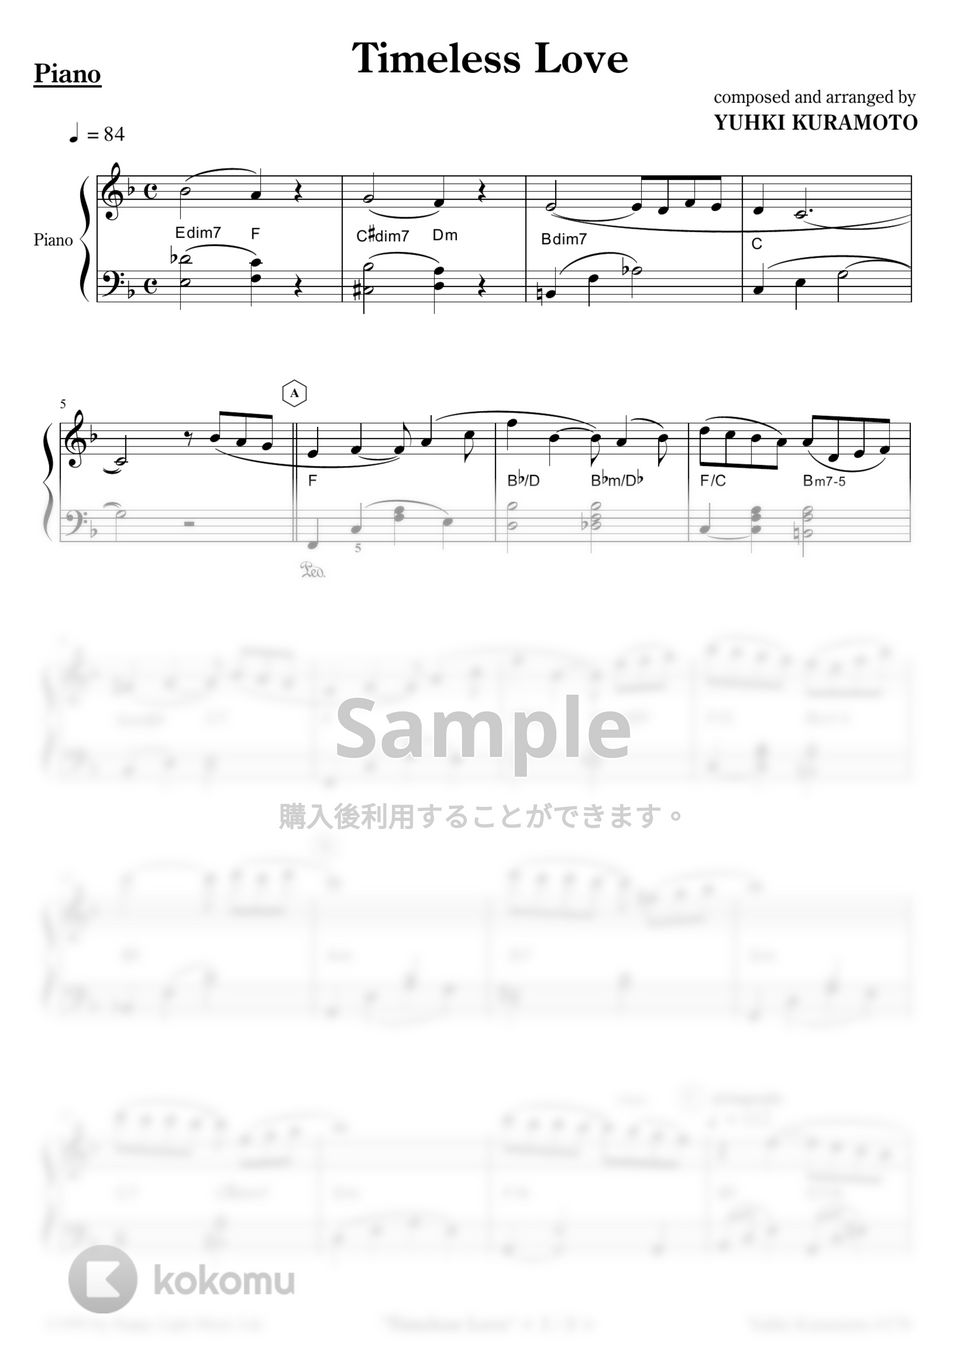 Yuhki Kuramoto - Timeless Love (Easy Ver.) by Yuhki Kuramoto